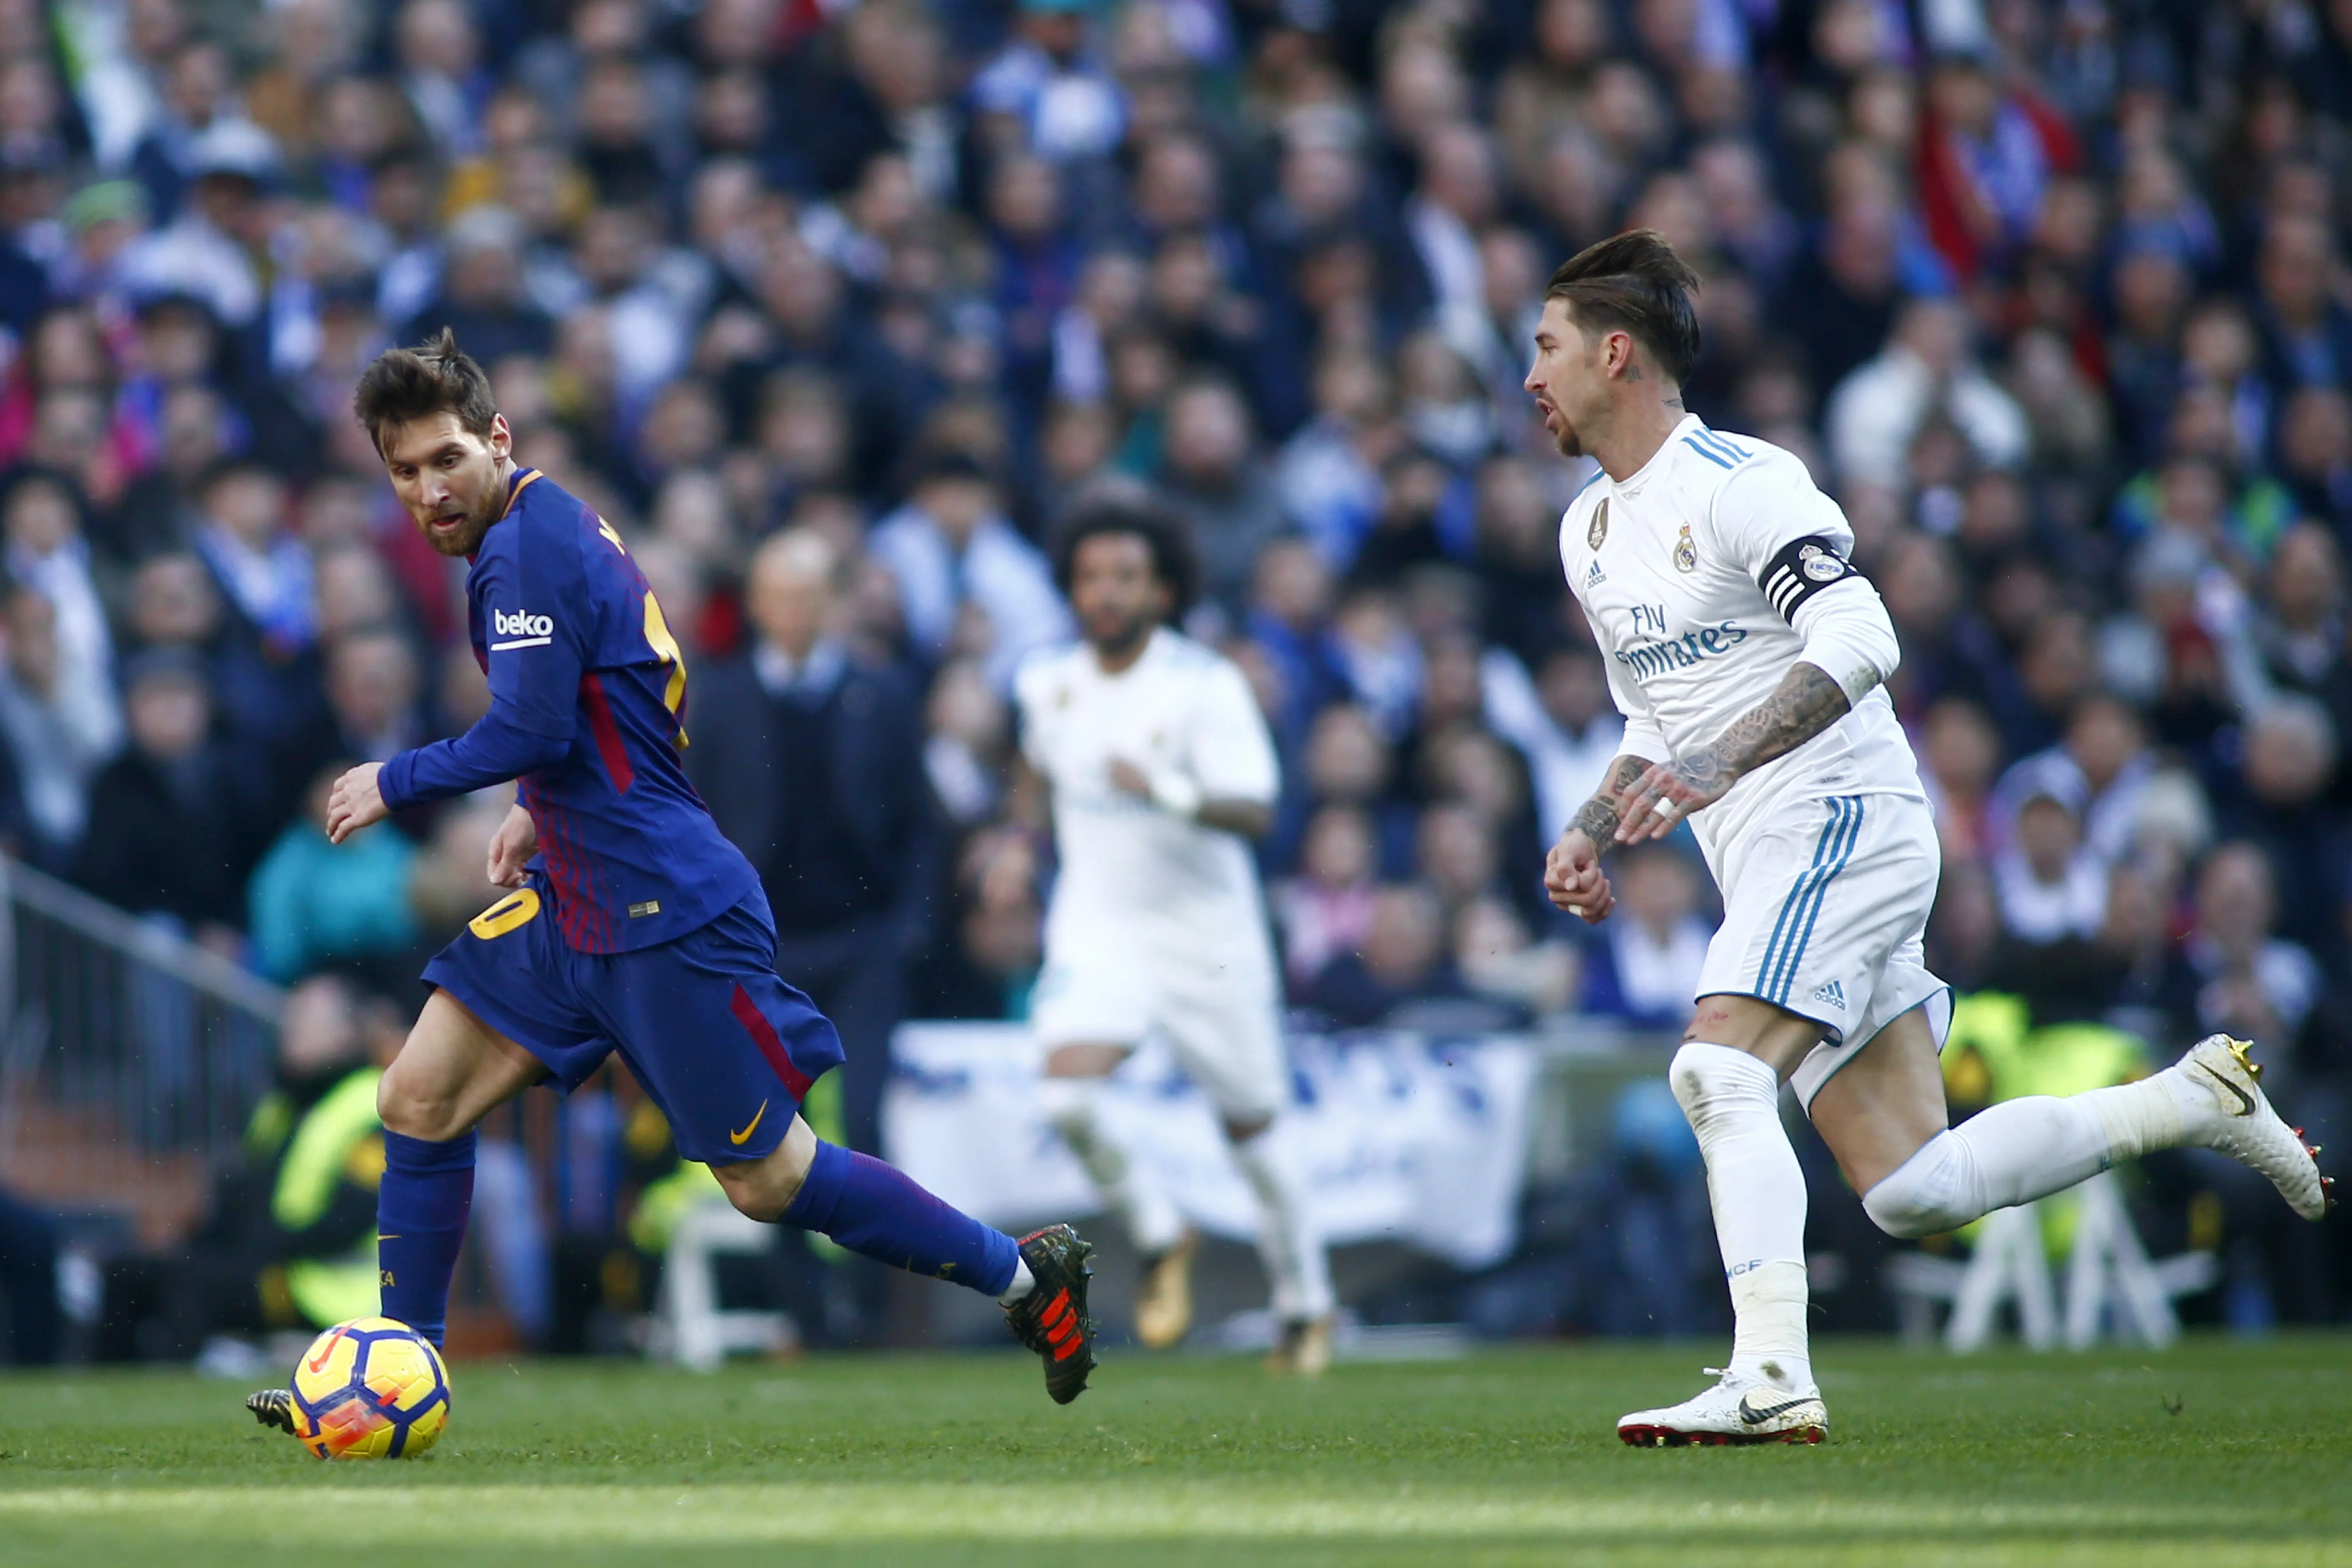 Sudah lama Barcelona seperti bergantung kepada Messi. (JAVIER SORIANO / AFP)